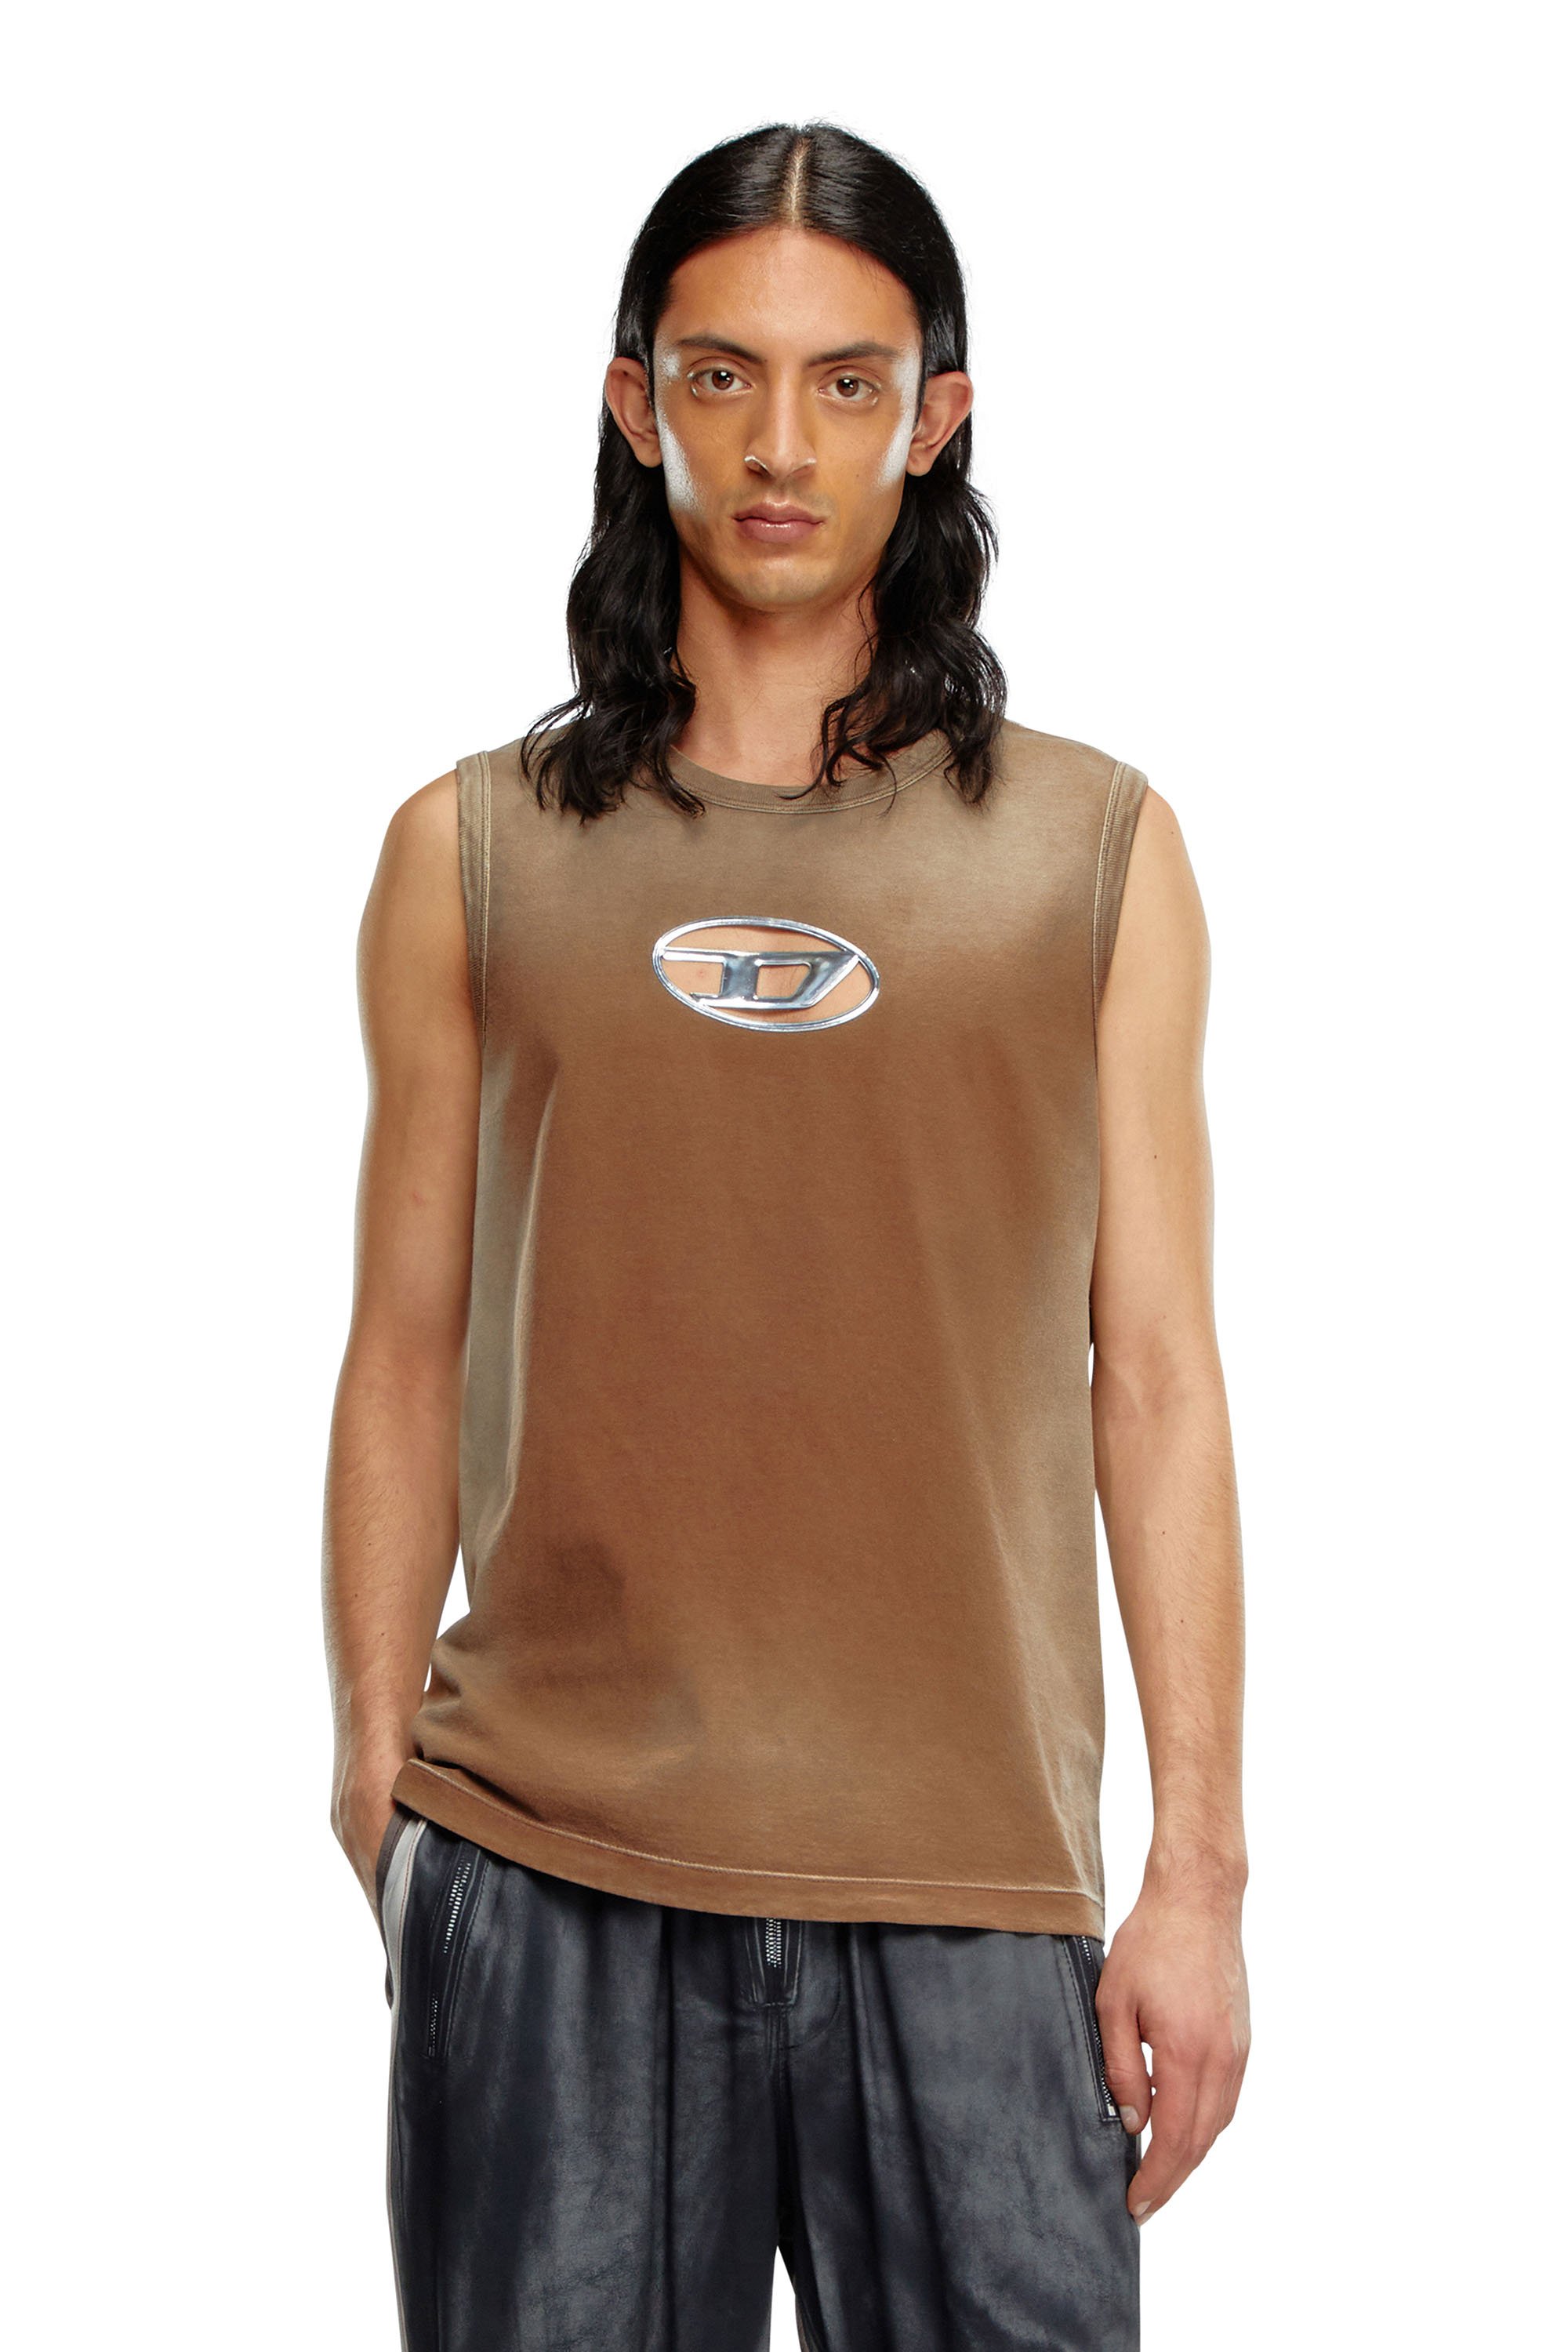 Diesel - Camiseta sin mangas desteñida con Oval D en relieve - Camisetas - Hombre - Marrón